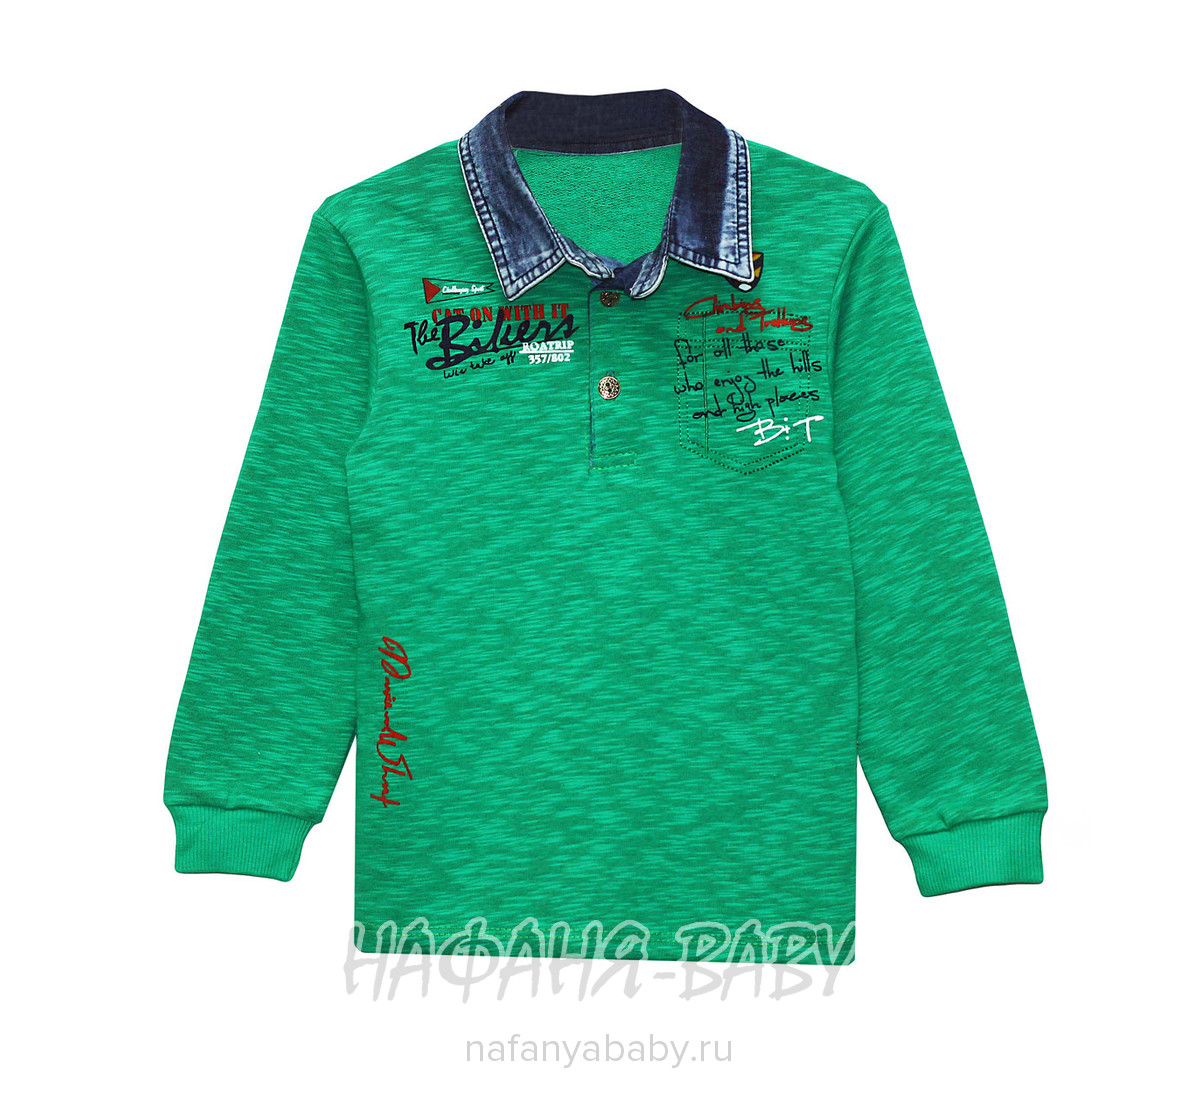 Детская рубашка-поло MODAX, купить в интернет магазине Нафаня. арт: 7032.